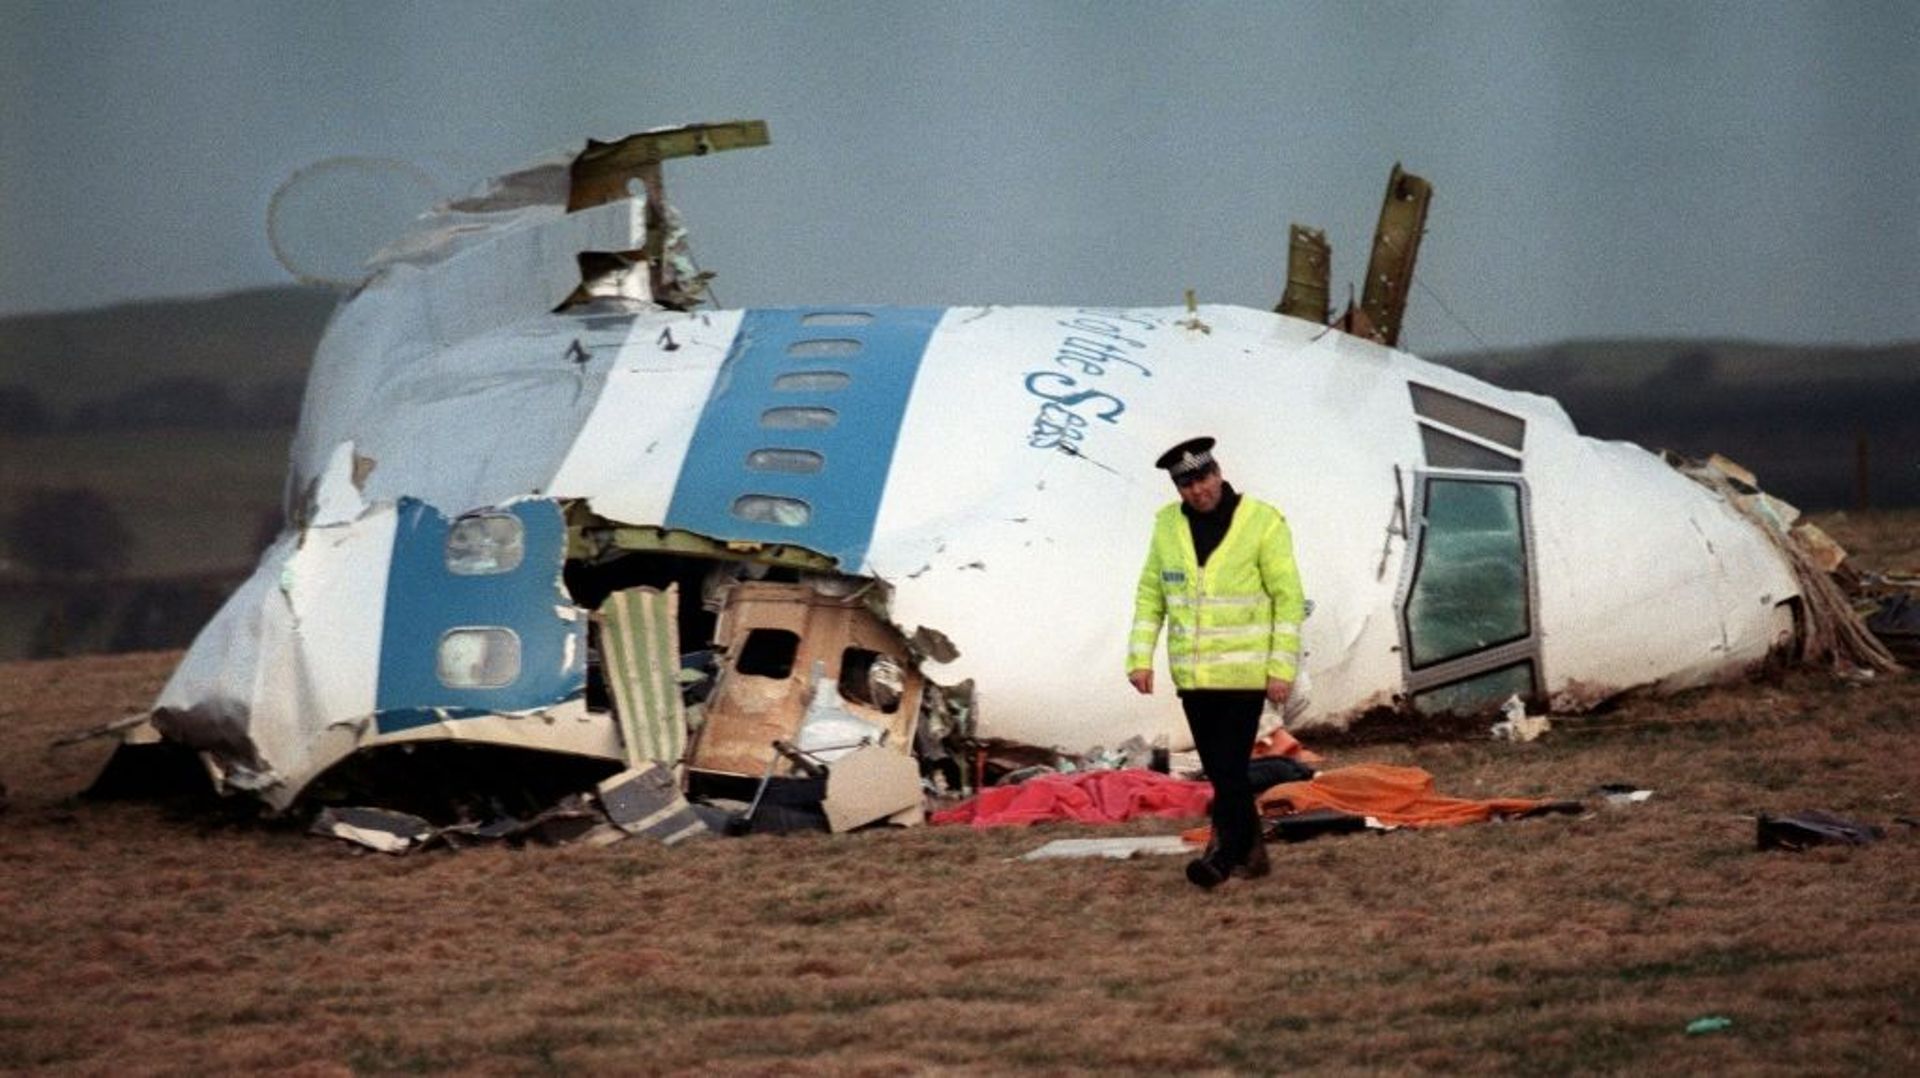 Le cockpit du Boeing 747 de la Pan Am détruit par un attentat à la bombe le 21 décembre 1988 au-dessus de Lockerbie, en Ecosse.
